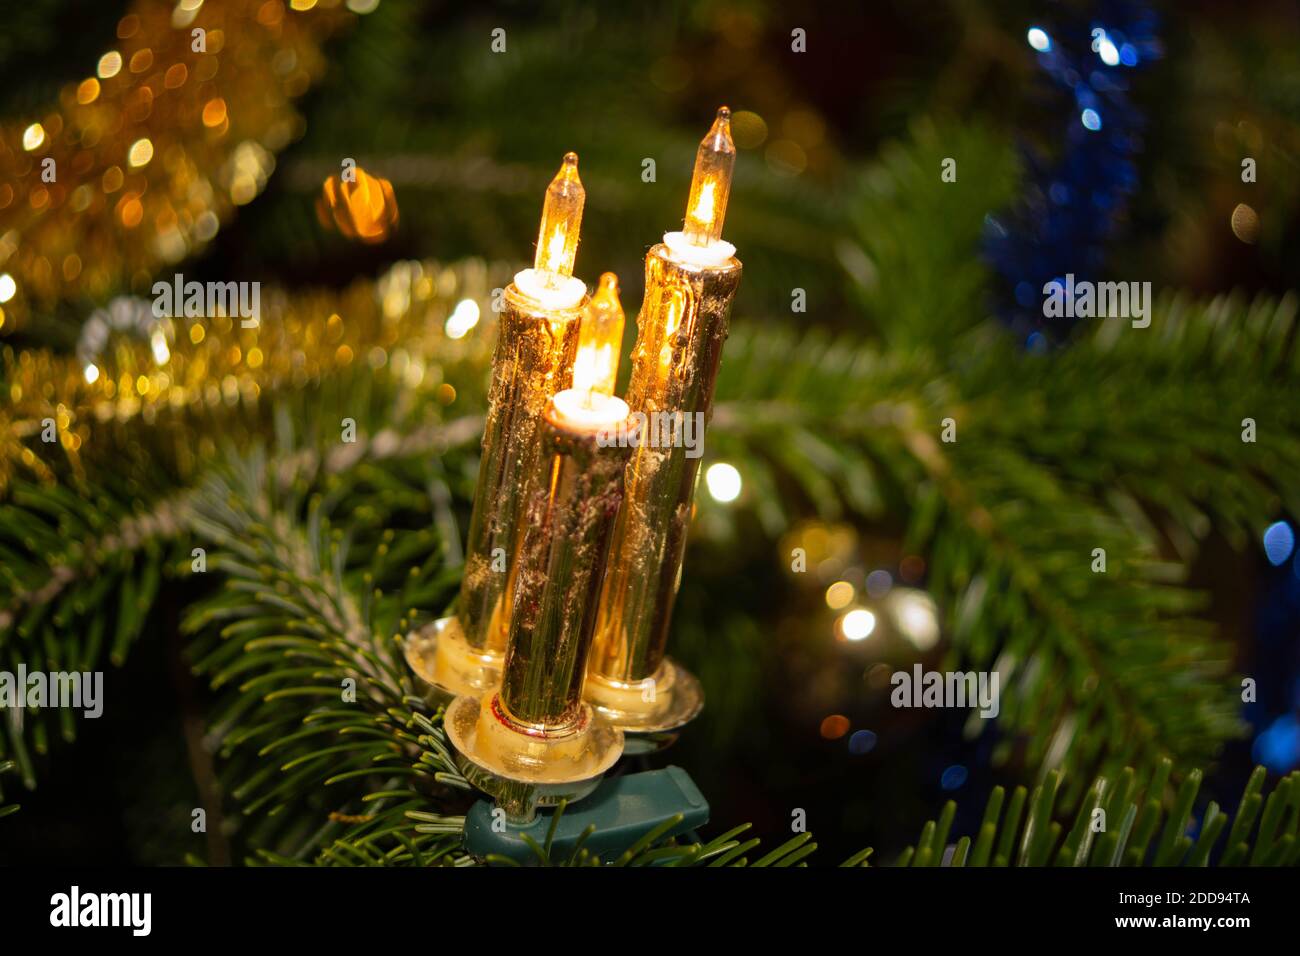 Goldene Kerzen am Weihnachtsbaum, Elekrtisches Licht am Weihnachtsbaum Stock Photo